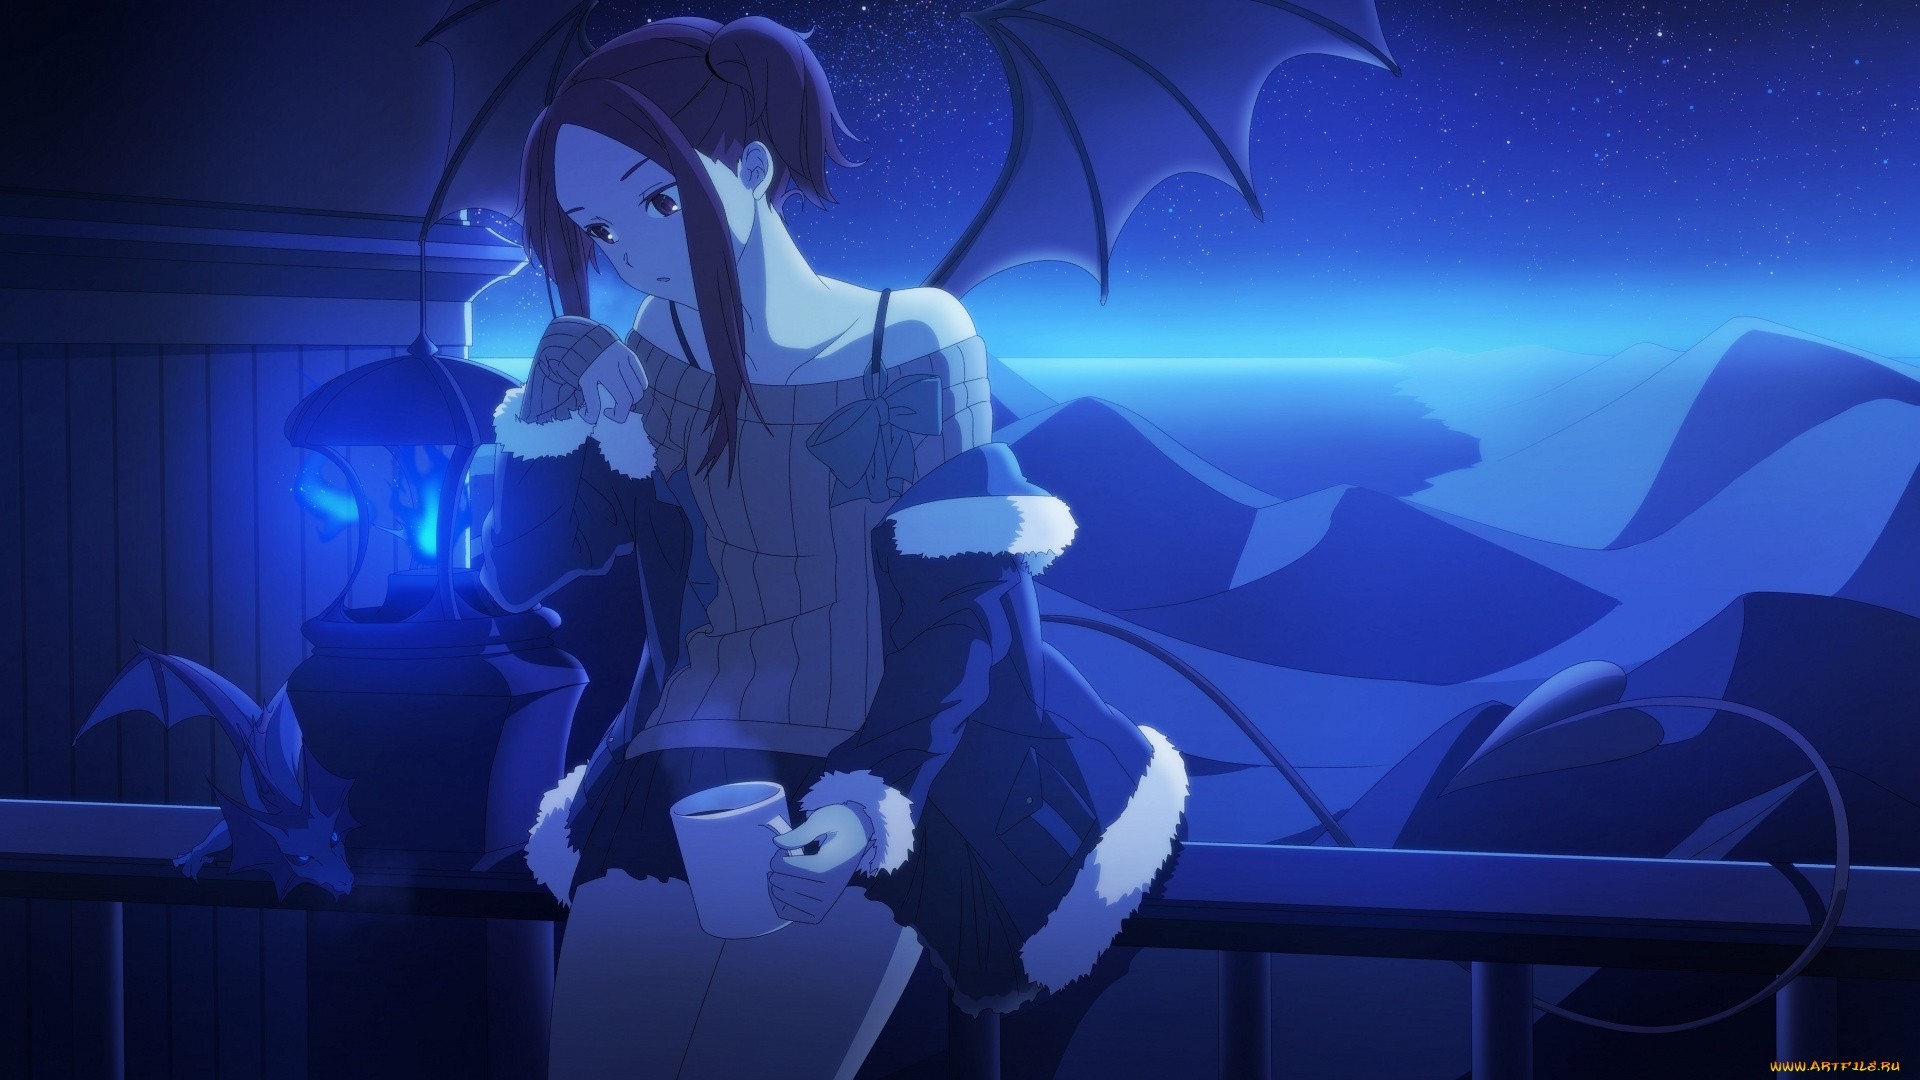 Night Anime Girl HD Wallpaper